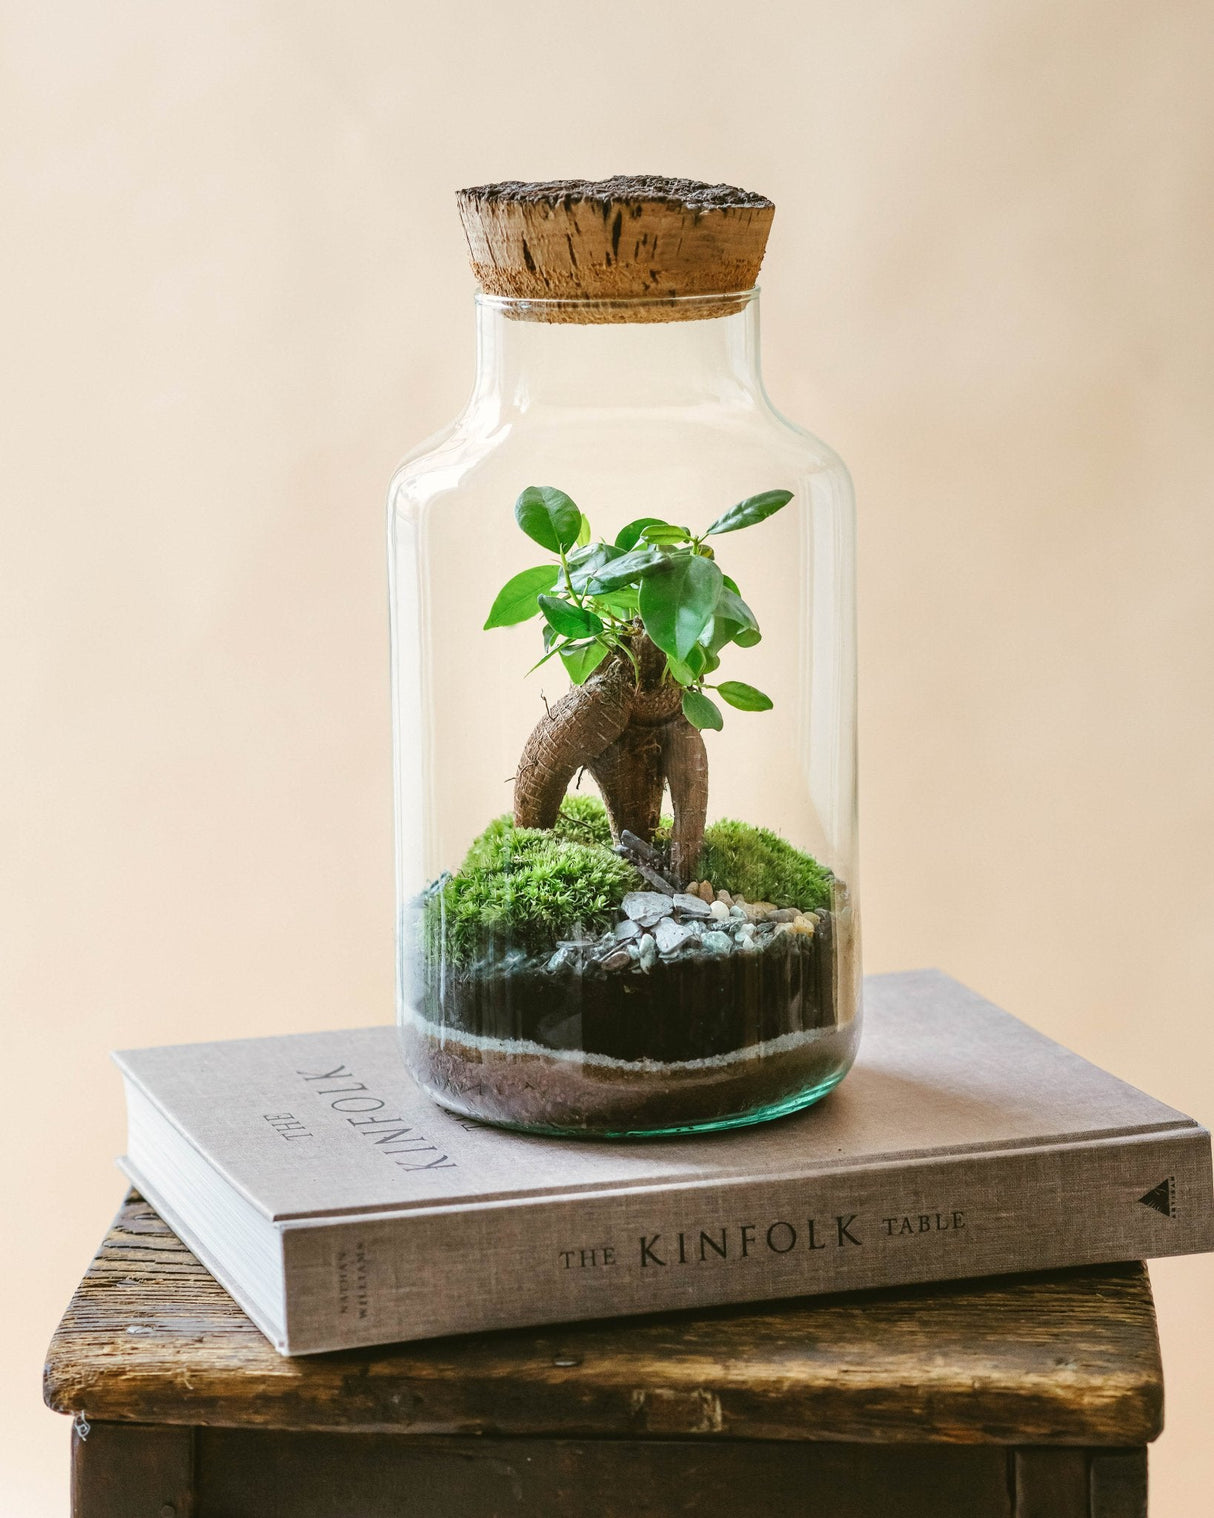 Livraison plante Kit Terrarium DIY - NAPOLI